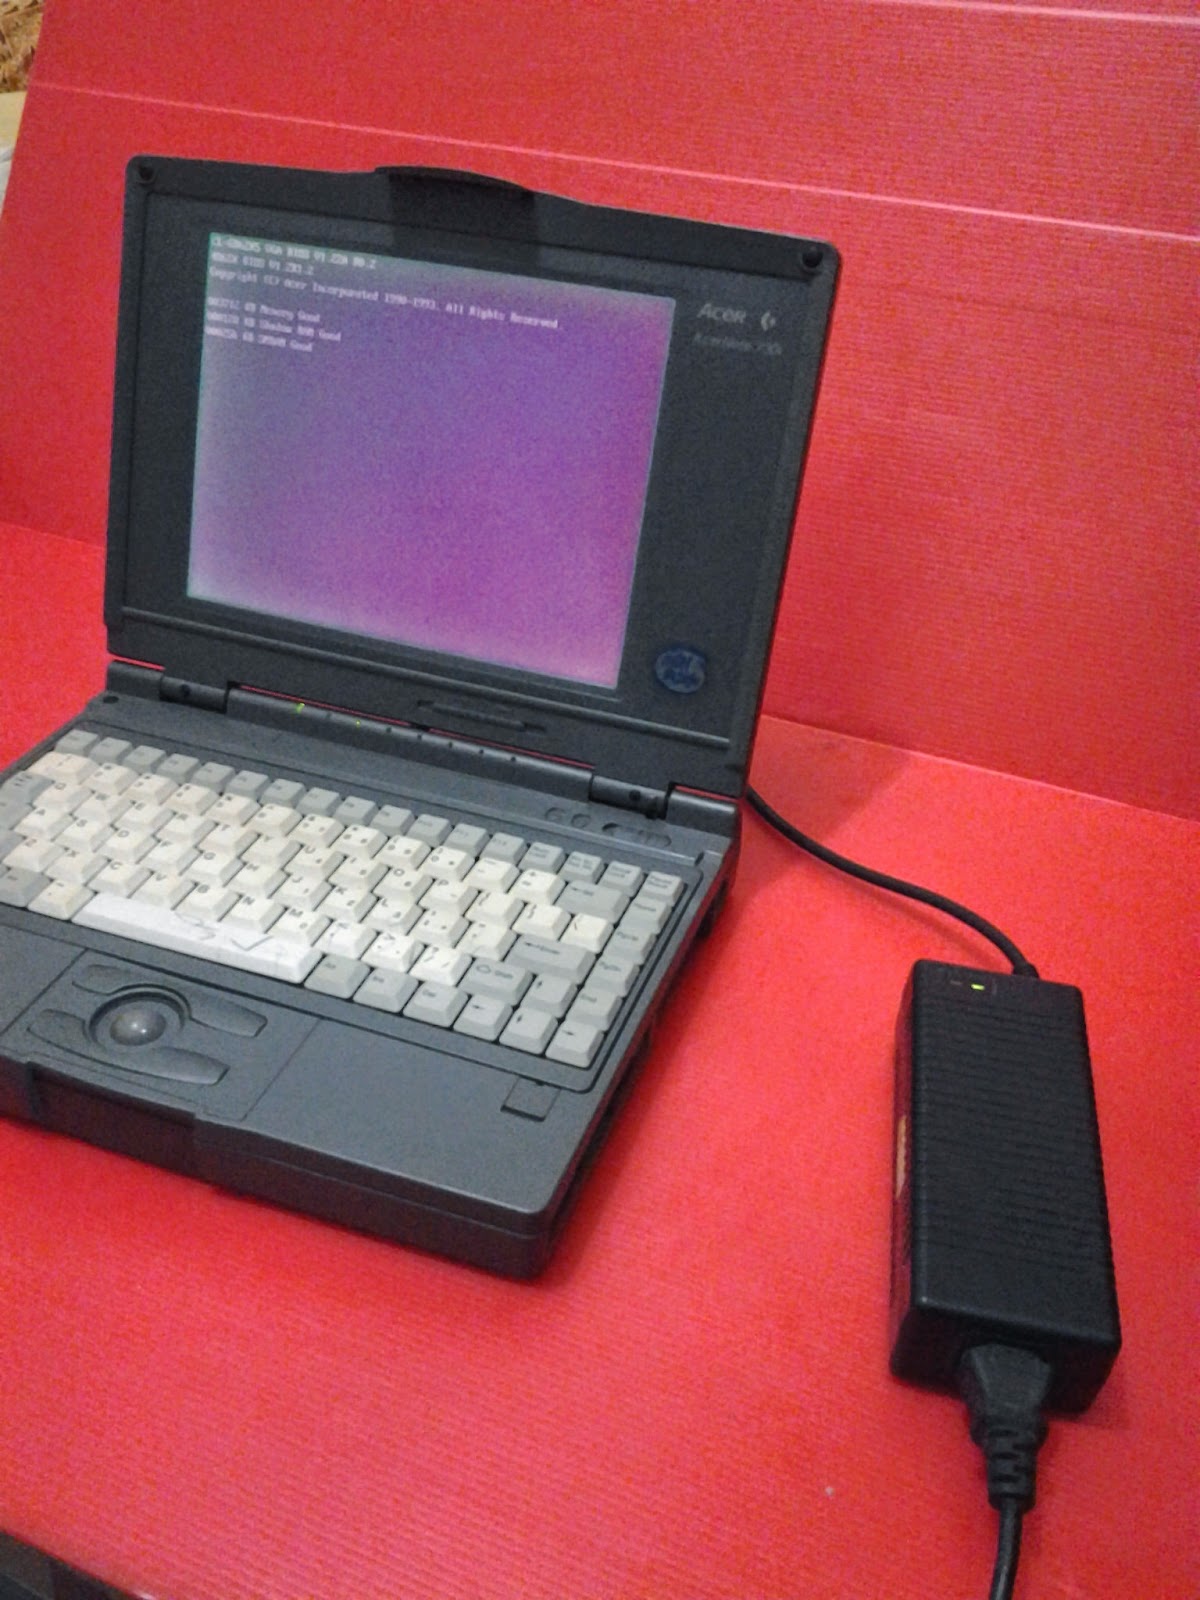 Toko Barang Bekas ku Laptop Acer Acernote 730i Jadul Antik